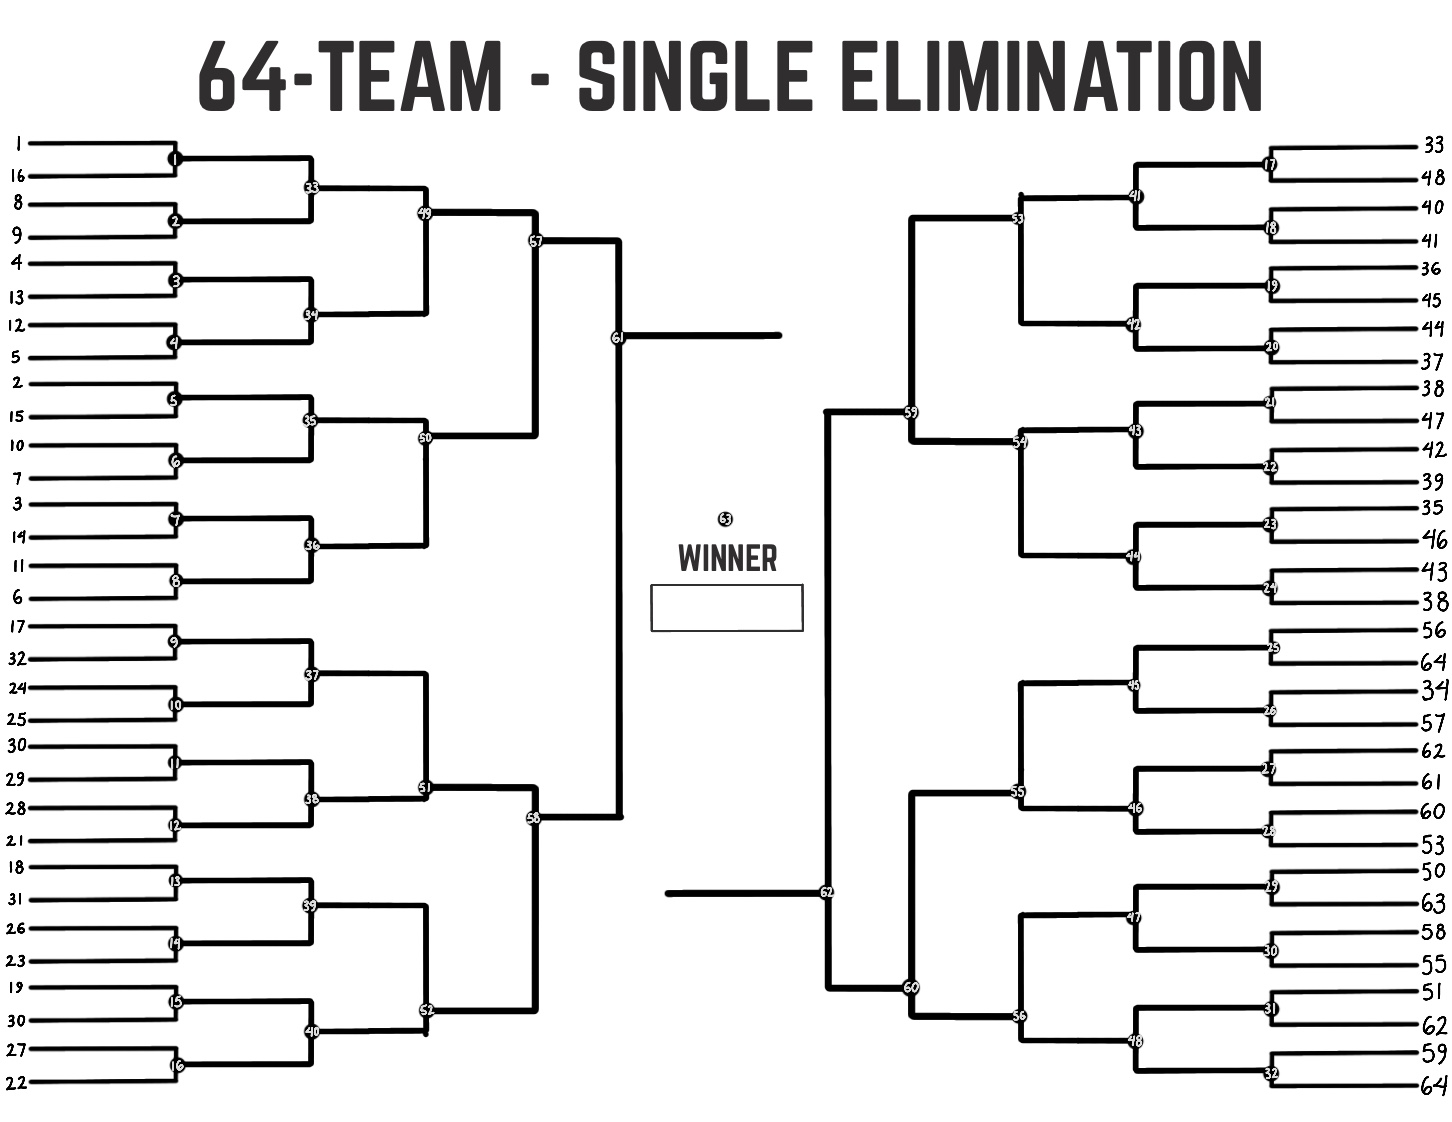 64 Team Bracket Single Elimination - 64 Team Single Elimination Print...